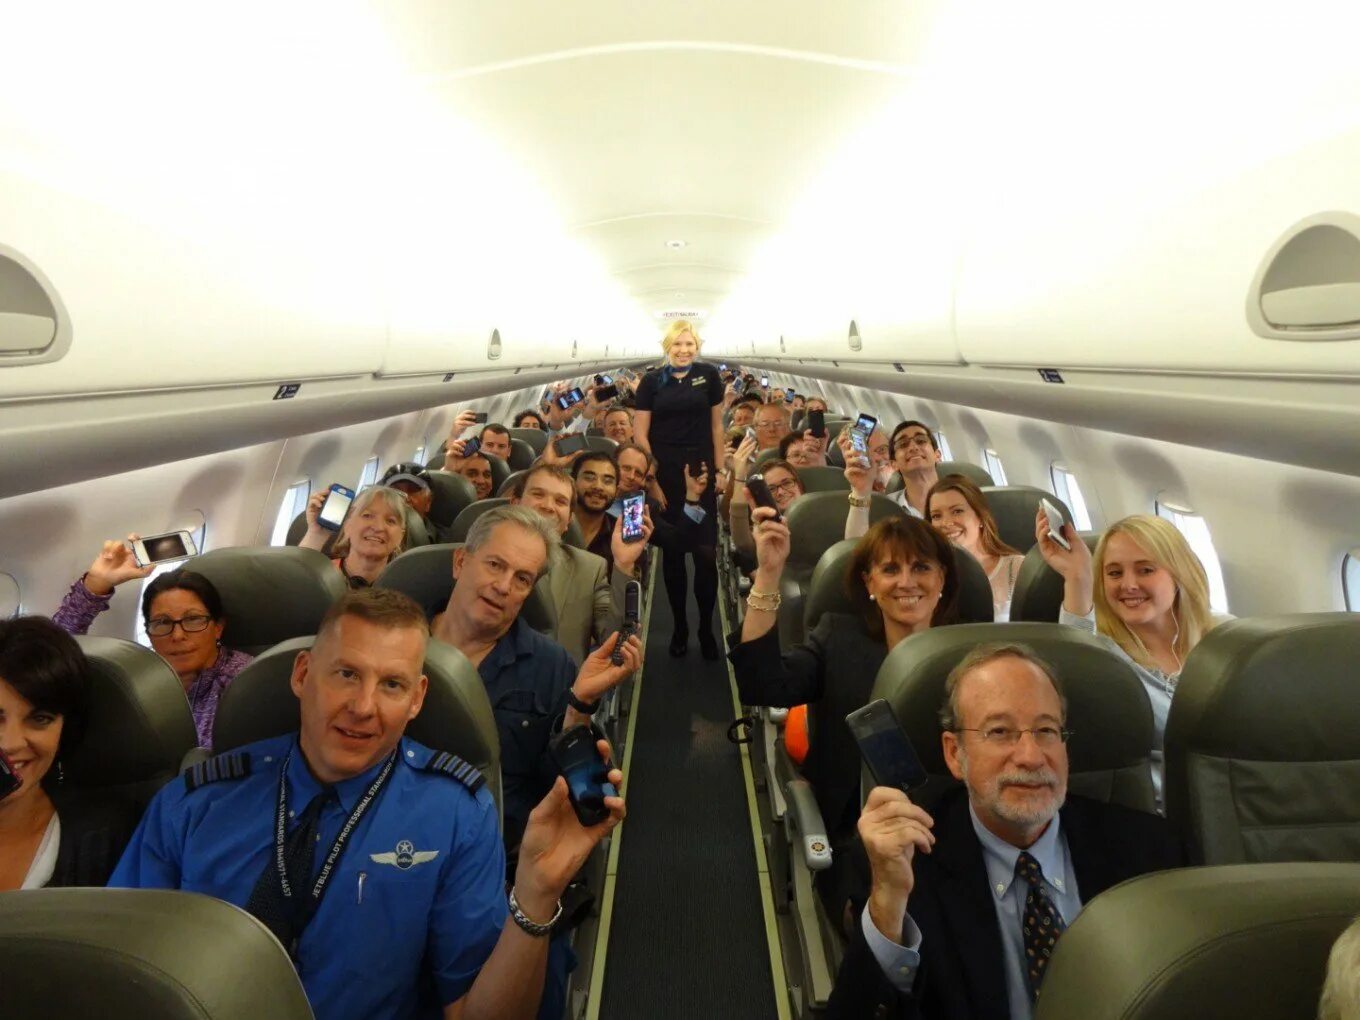 Высокие люди в самолете. Самолёт внутри с людьми. Самолет с пассажиром. Салон самолета с людьми. Салонтсамолета с пассажипраи.